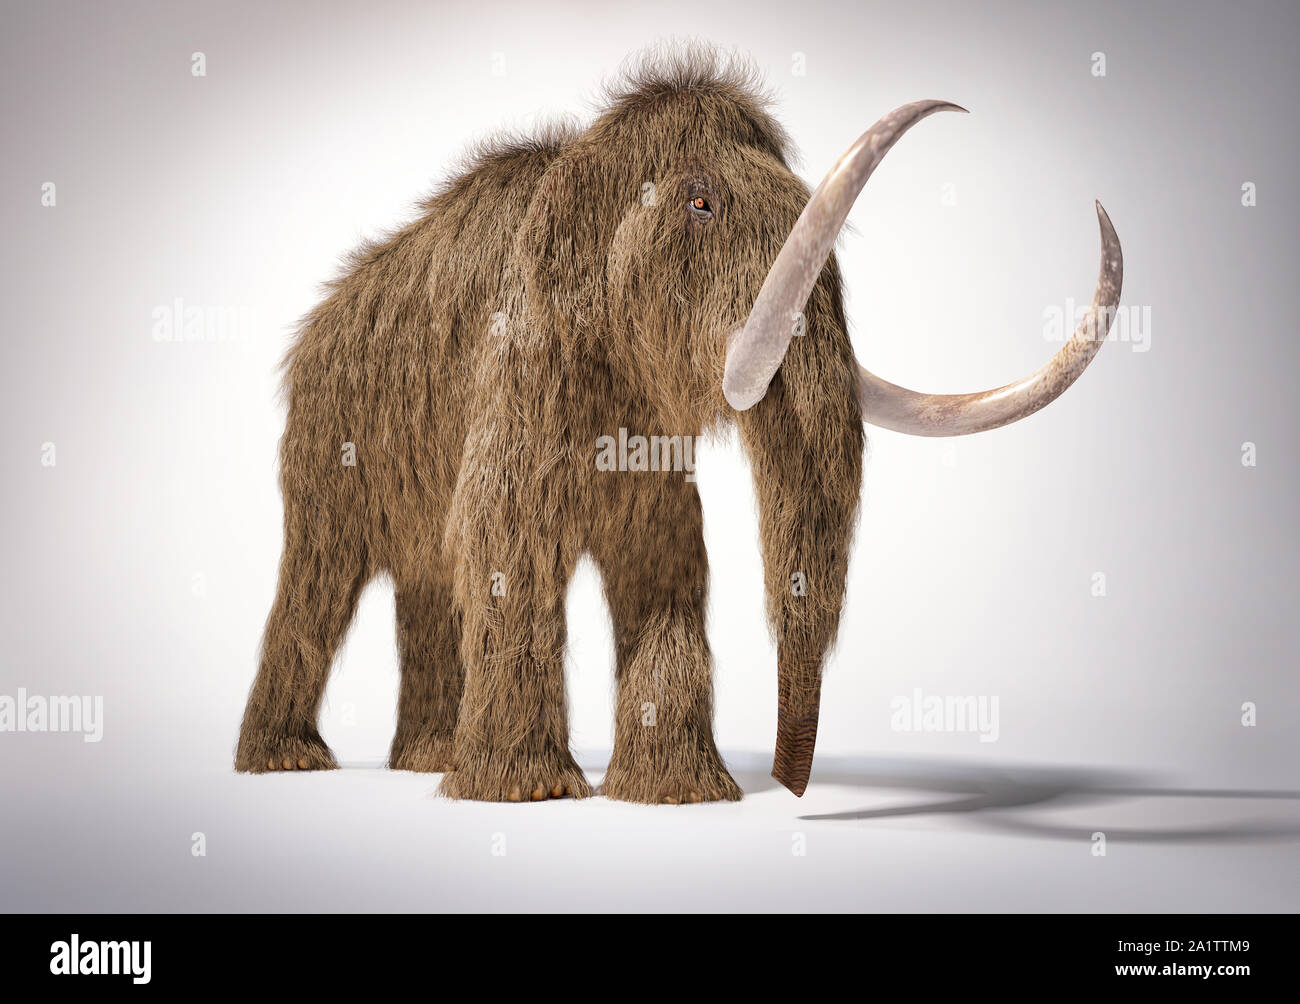 Woolly mammoth realistische 3D-Darstellung aus der Perspektive gesehen. Auf weißem Hintergrund mit Schatten fiel. Stockfoto